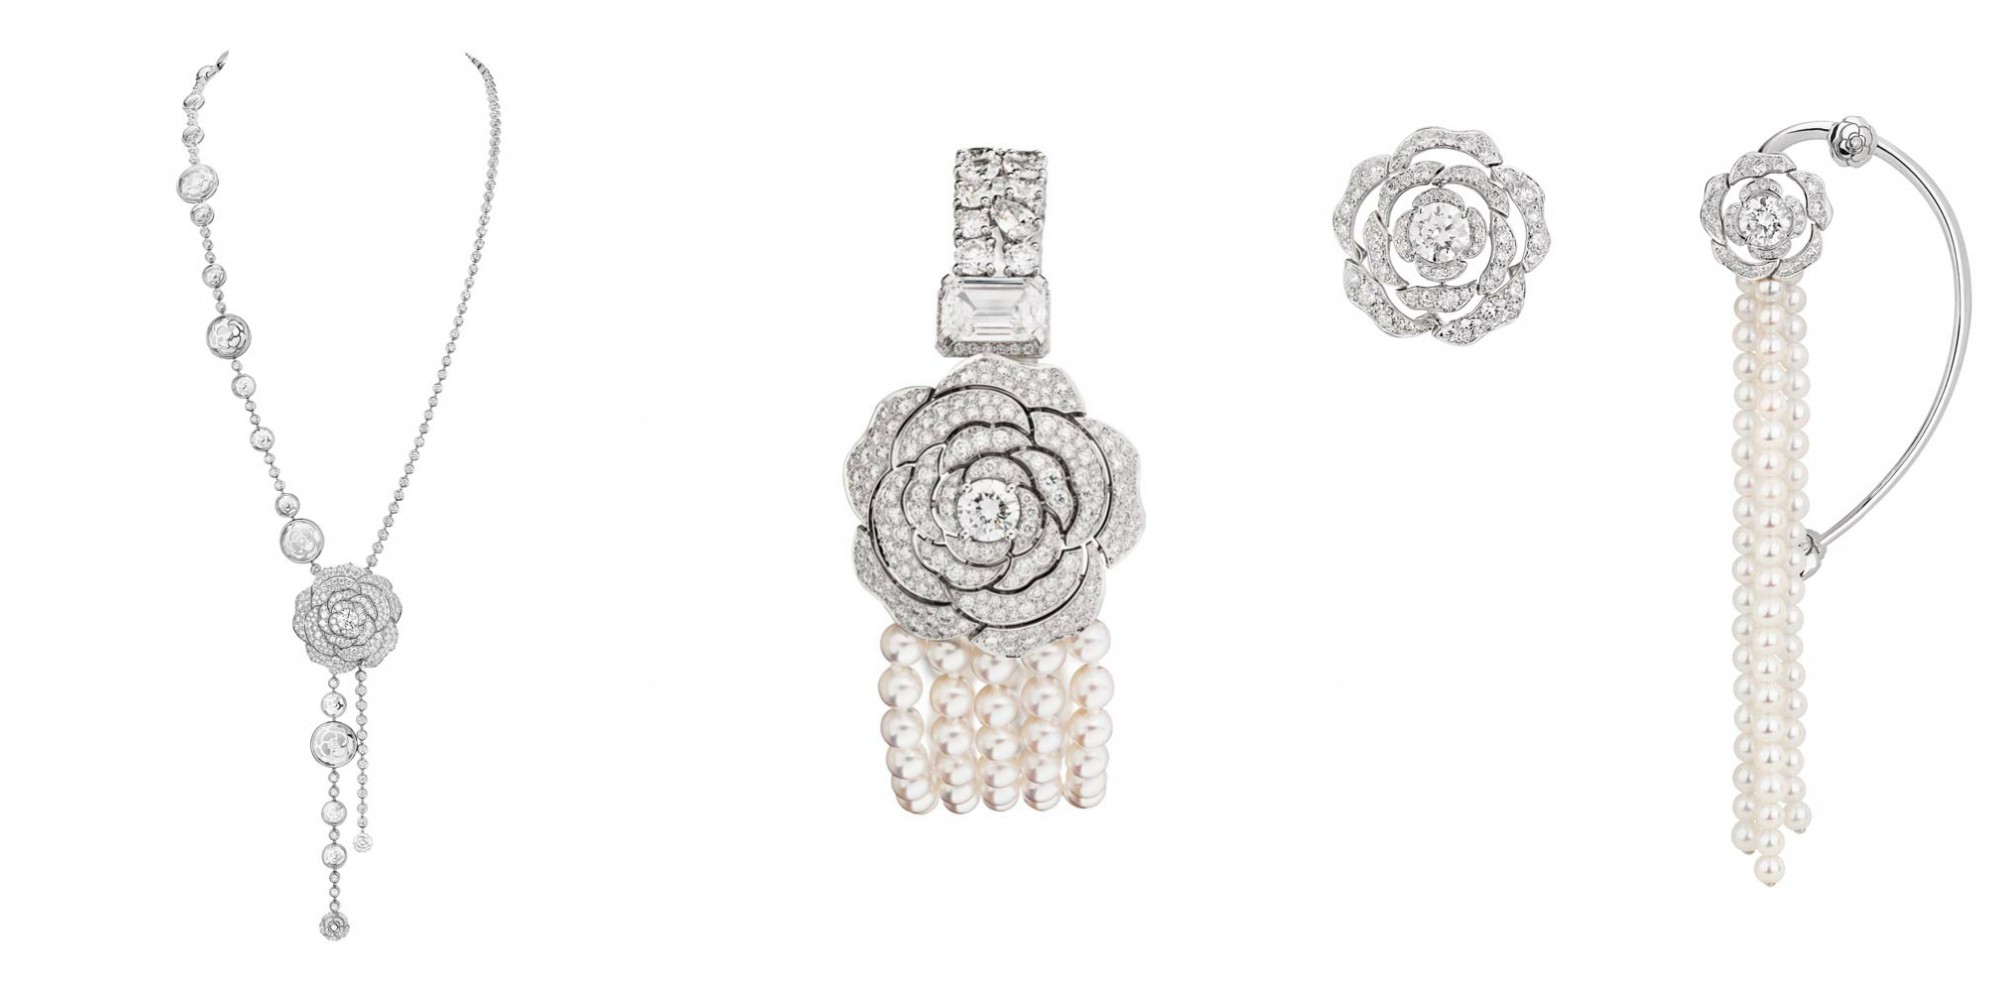 Chanel посвятили камелии коллекцию высокого ювелирного искусства